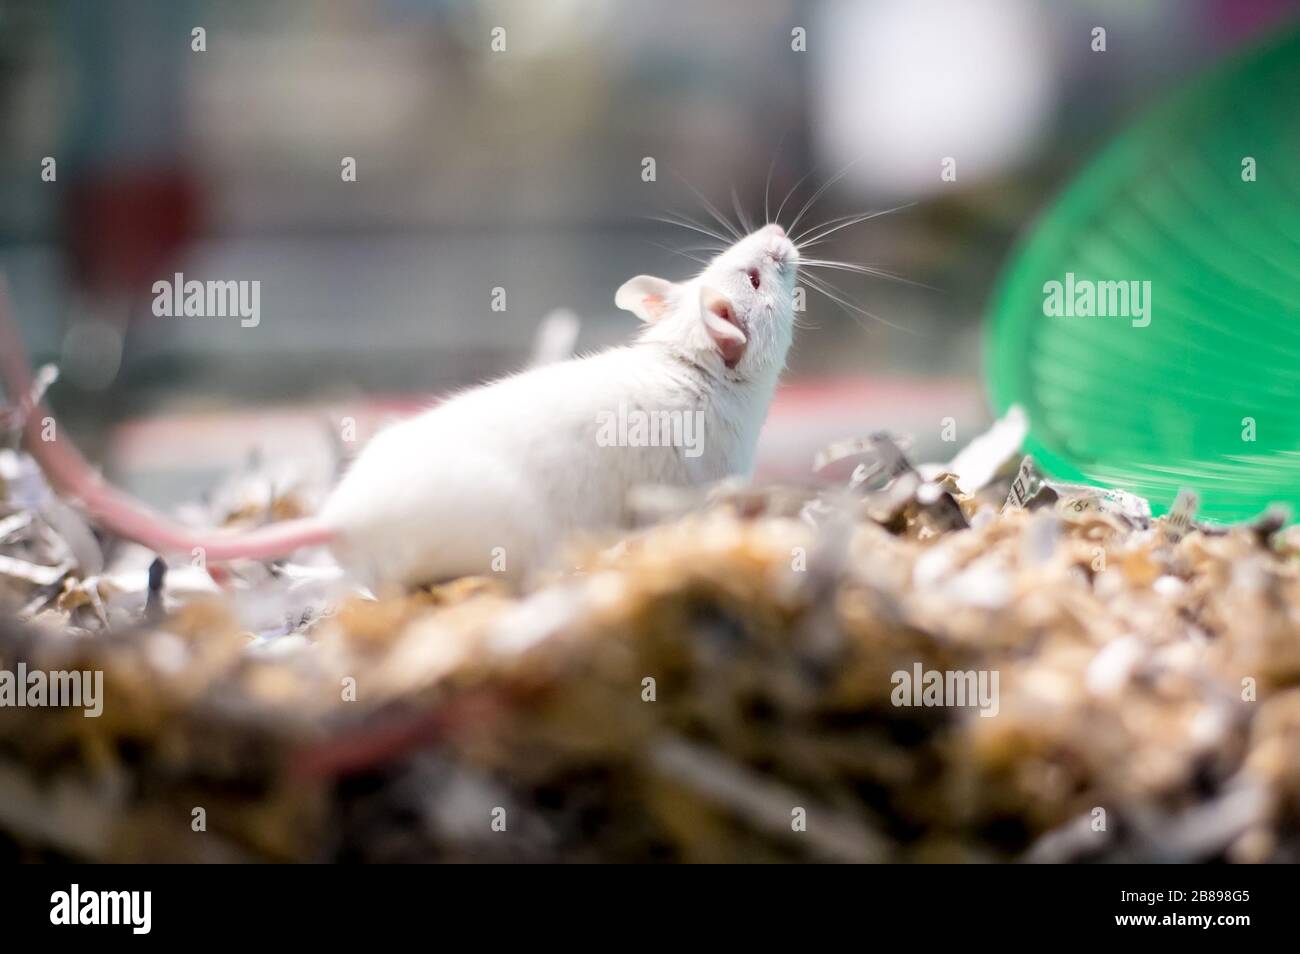 Une souris blanche pour animaux de compagnie dans une cage remplie de papier déchiqueté Banque D'Images